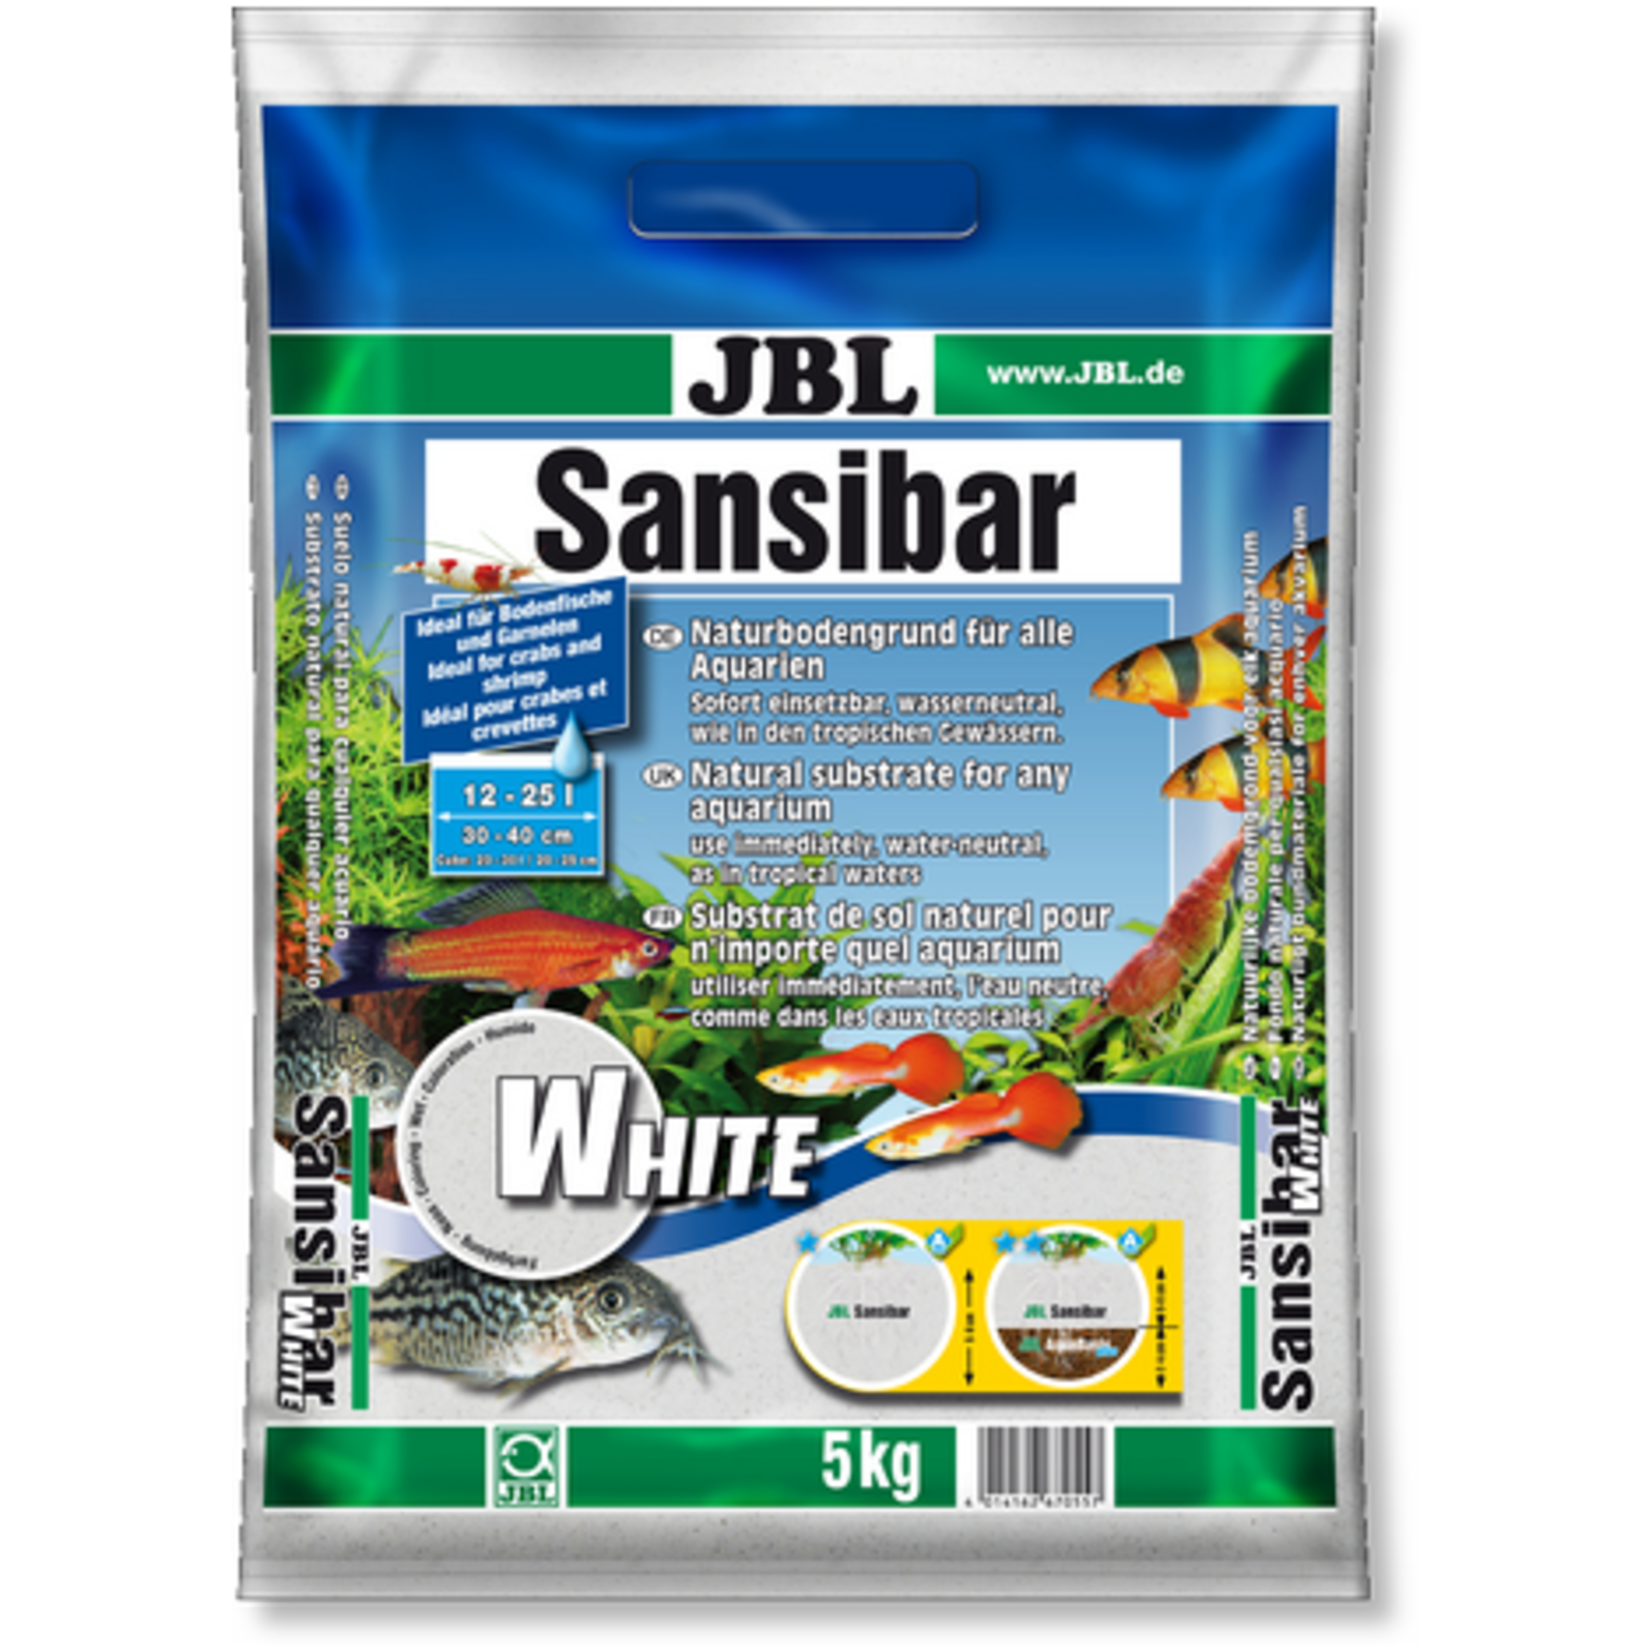 JBL JBL Sansibar WHITE 5kg